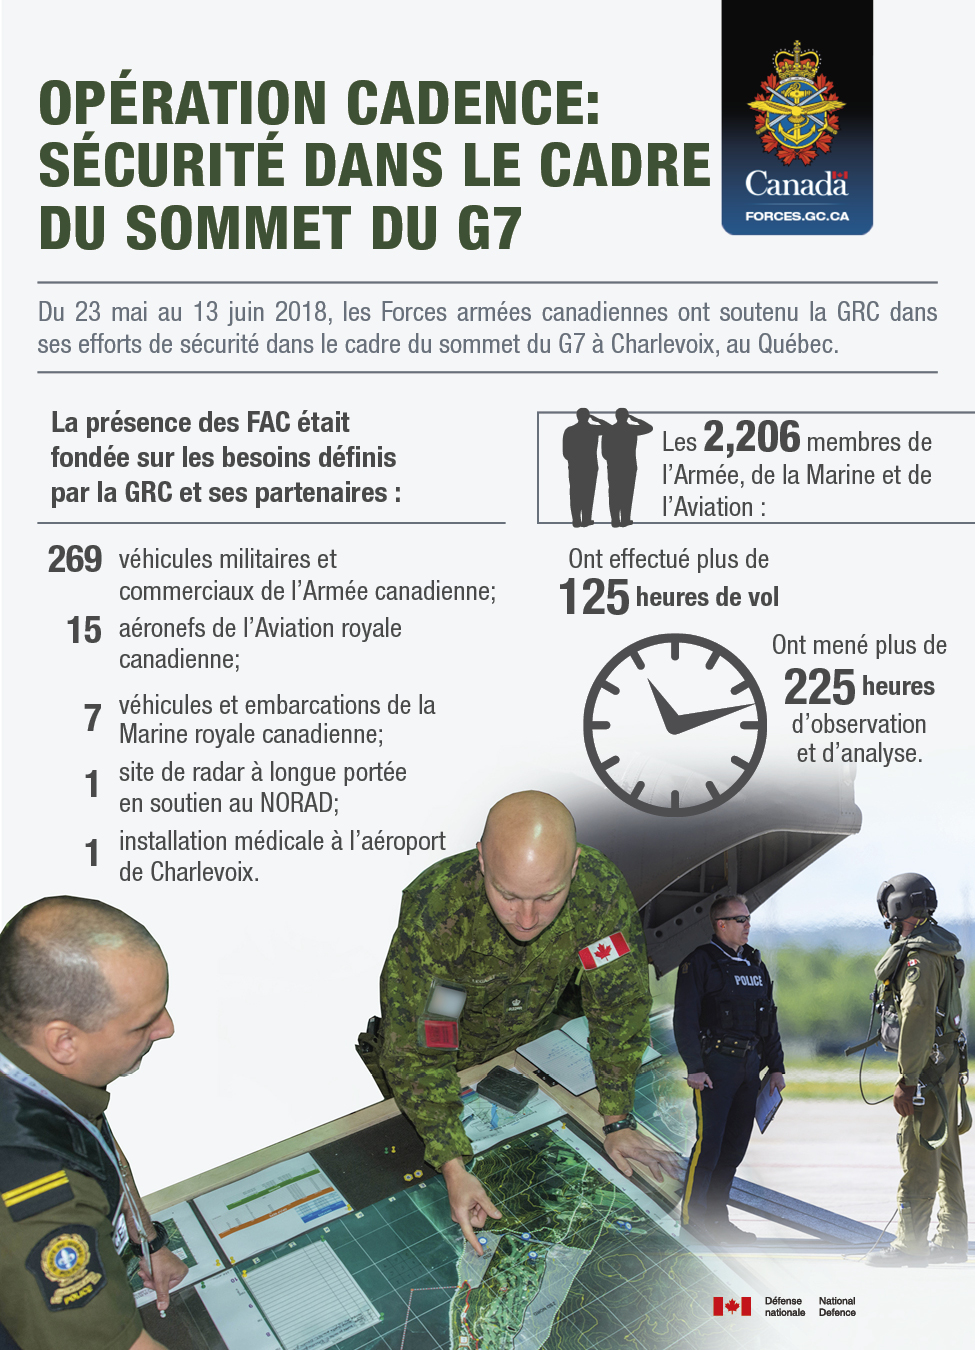 Dans le coin supérieur droit de l'infographique, il y a l'insigne des Forces armées canadiennes. Le texte remplit la moitié supérieure de l'infographique. Opération CADENCE: Sécurité dans le cadre du sommet du G7. Du 23 mai au 13 juin 2018, les Forces armées canadiennes ont soutenu la GRC dans ses efforts de sécurité dans le cadre du sommet du G7 à Charlevoix, au Québec. La présence des FAC était fondée sur les besoins définis par la GRC et ses partenaires : 269 véhicules militaires et commerciaux de l’Armée canadienne; 15 aéronefs de l’Aviation royale canadienne; 7 véhicules et embarcations de la Marine royale canadienne; 1 site de radar à longue portée en soutien au NORAD; 1 installation médicale à l’aéronef de Charlevoix. Les 2,206 membres de l’Armée, de la Marine et de l’Aviation : ont effectué plus de 125 heures de vol; ont mené plus de 225 heures d’observation et d`analyse. Au bas de l'infographique, il y a deux images: une image représente un militaire canadien montrant une carte à un policier de la GRC. La deuxième image représente un pilote militaire canadien en train de parler à un policier de la GRC près d'un aéronef.